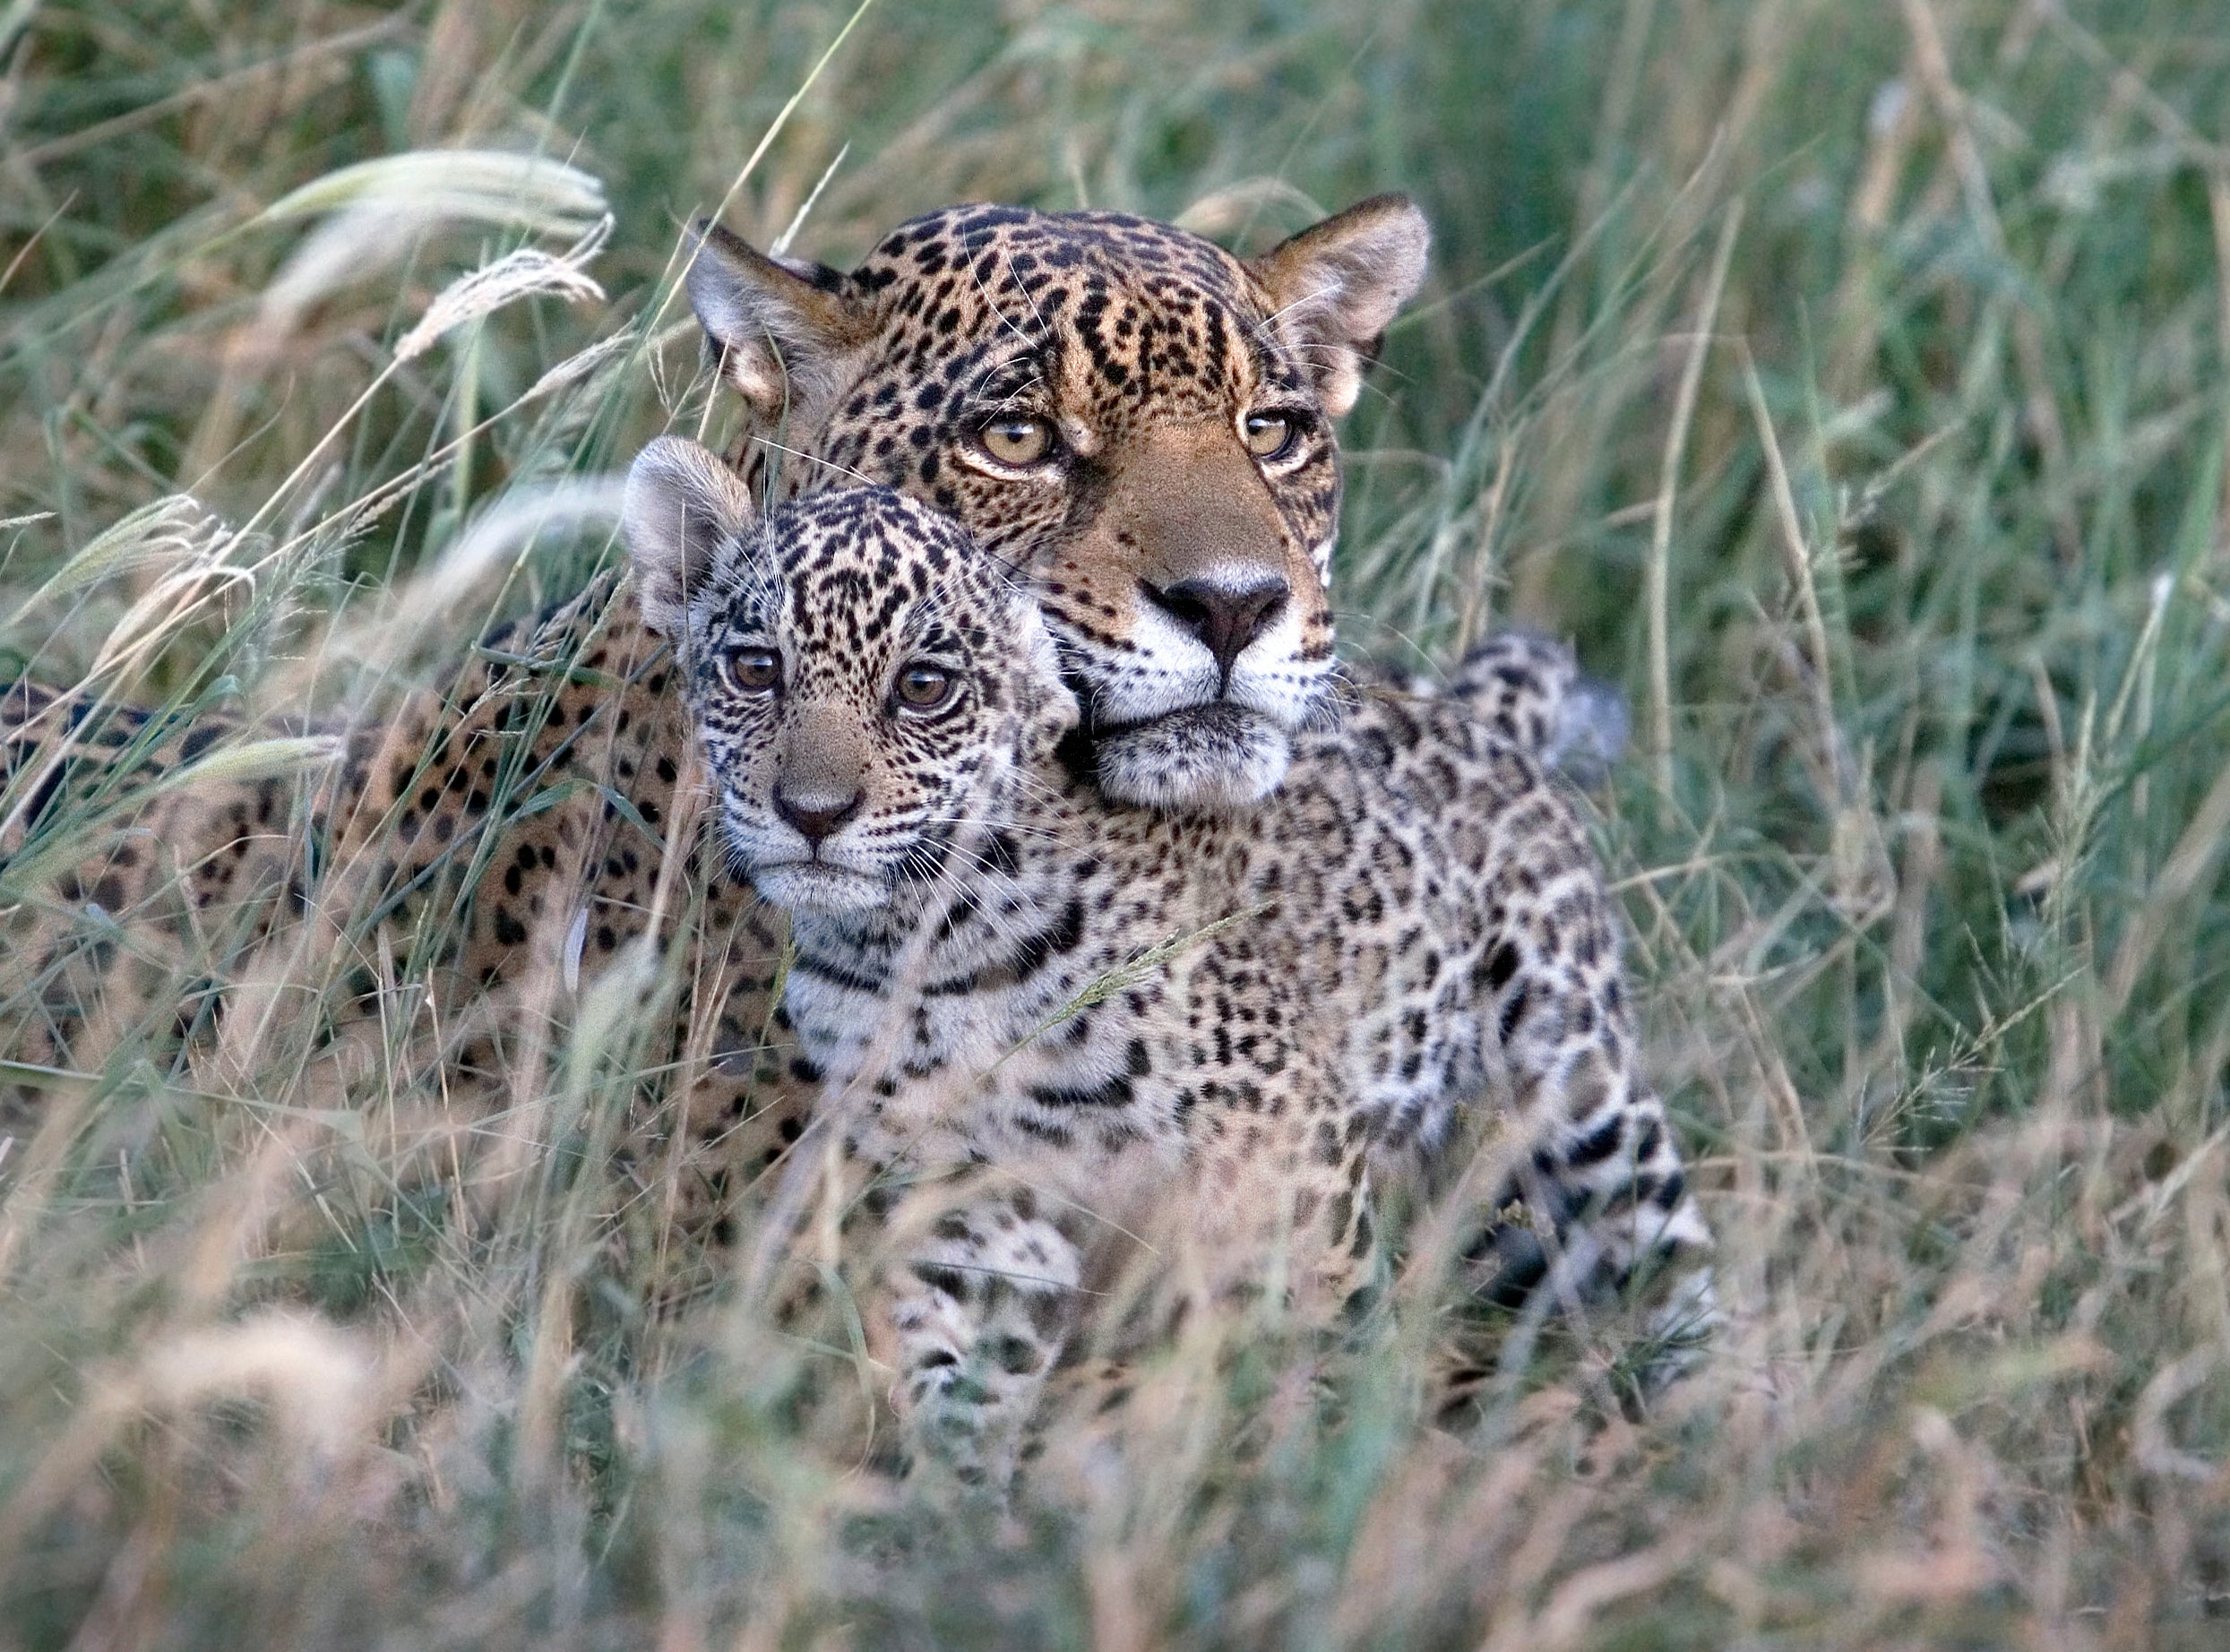 Kaaiyana the Jaguar and her cub